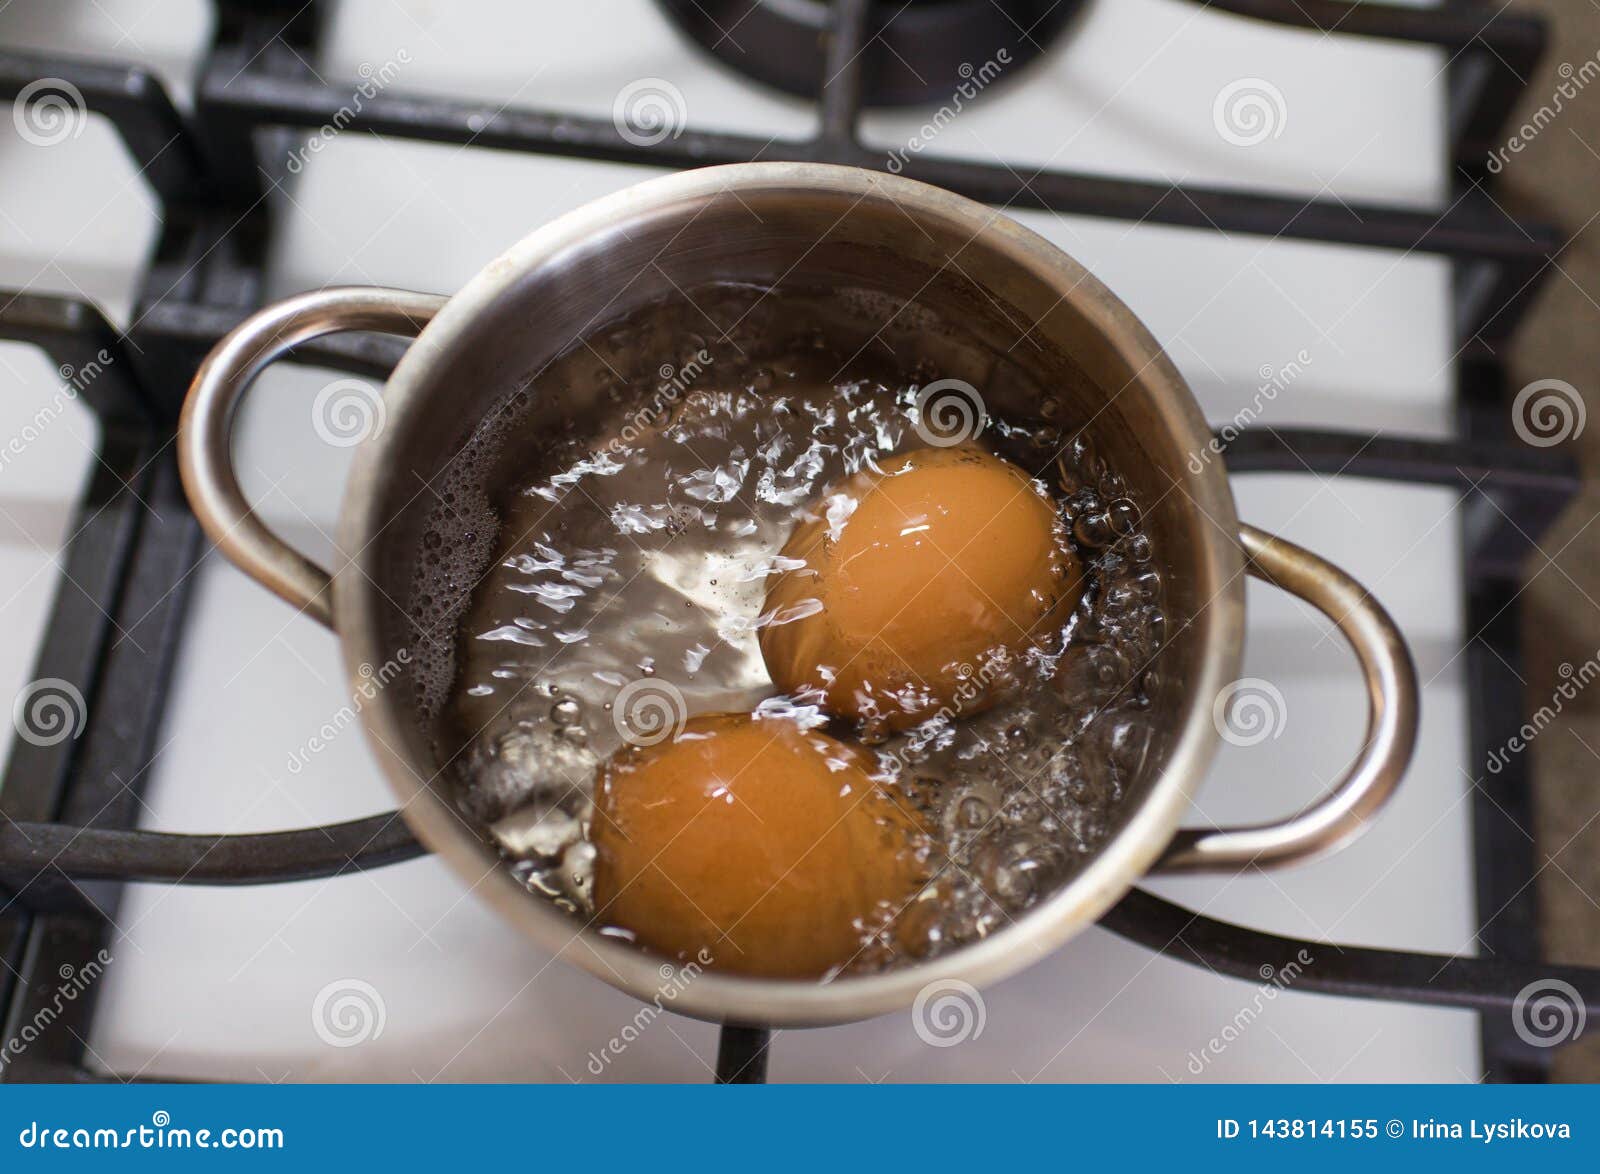 Due Uova Marroni Stanno Bollendo in Un Piccolo Vaso Su Un Fornello Bianco  Alla Cucina Immagine Stock - Immagine di bolle, cucina: 143814155